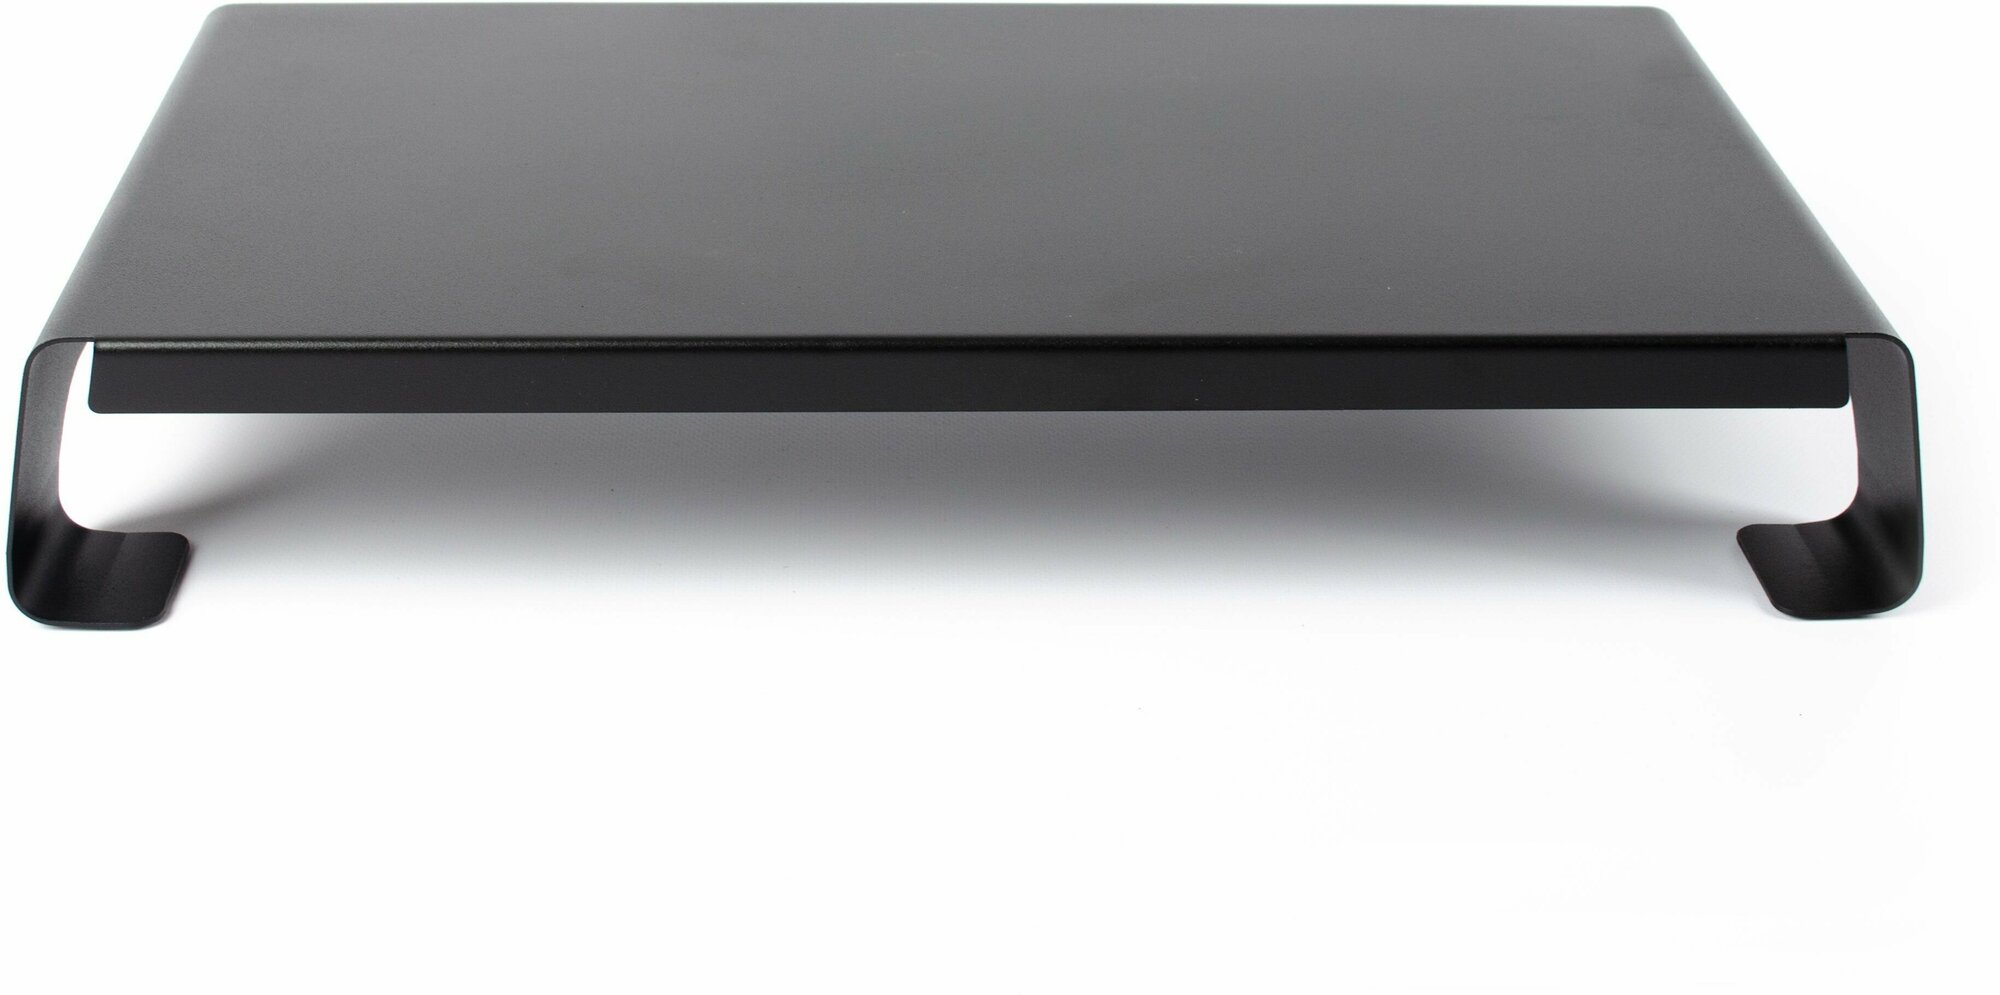 Подставка под монитор металлическая PM-100BL цвет черный муар